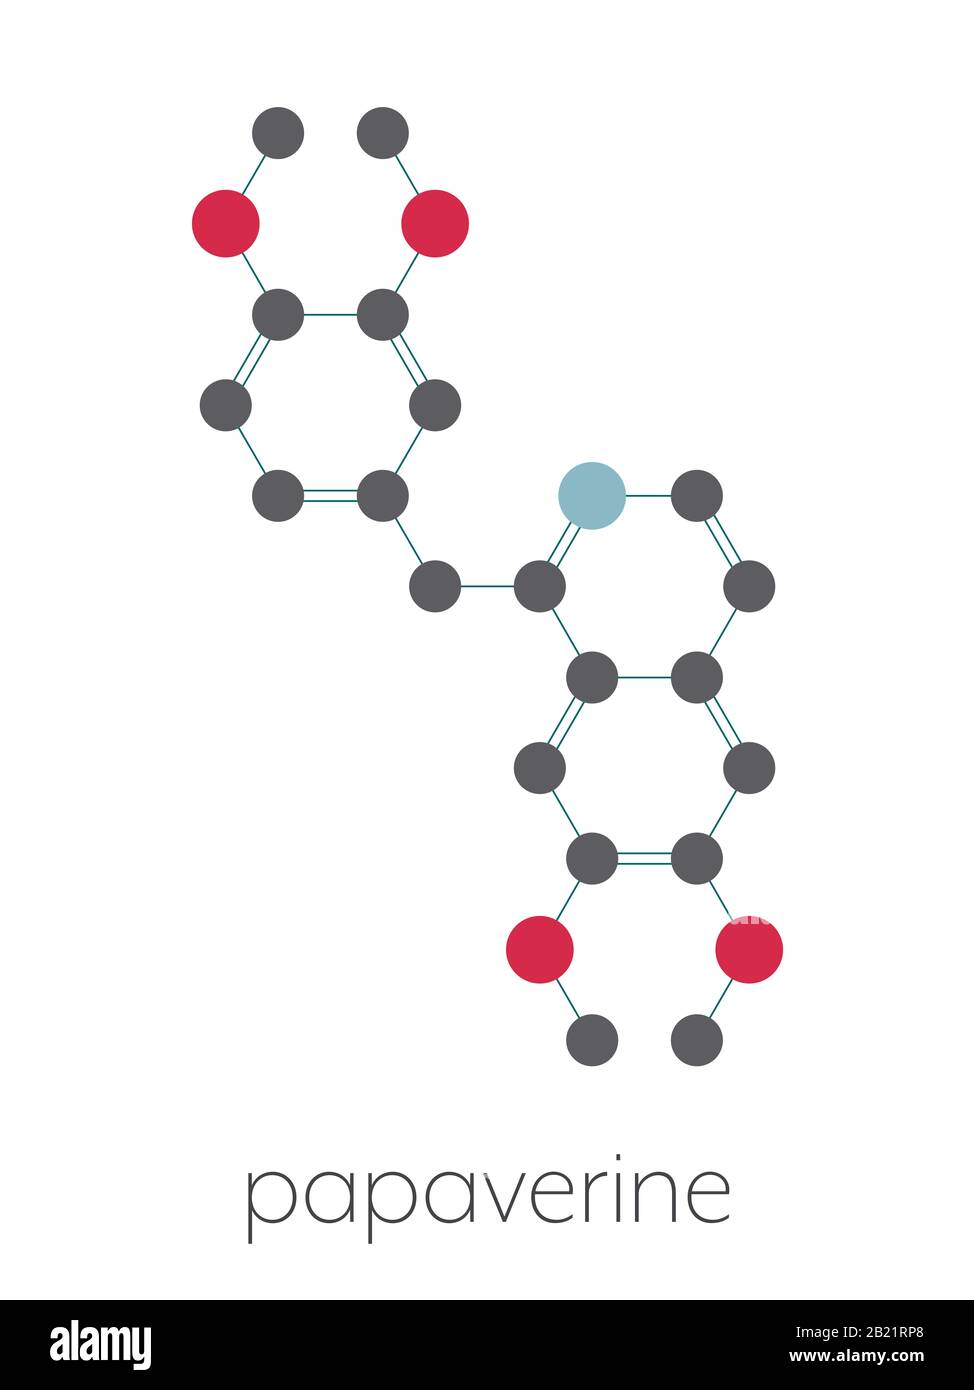 Papaverine opium alkaloid molecule, illustration Stock Photo